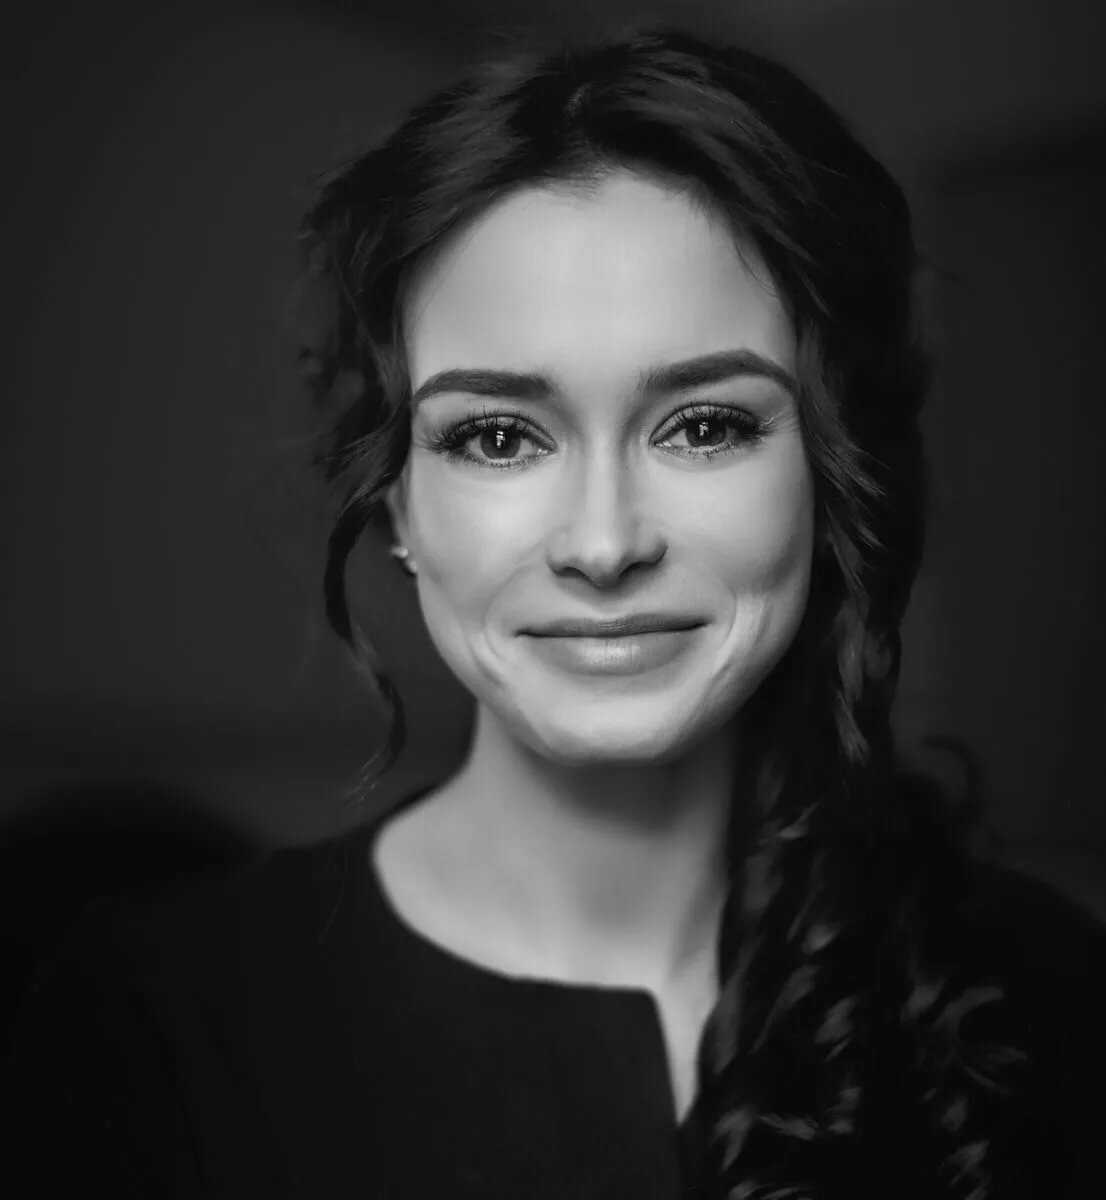 Александра власова – биография актрисы, фото, рост и вес, личная жизнь 2020